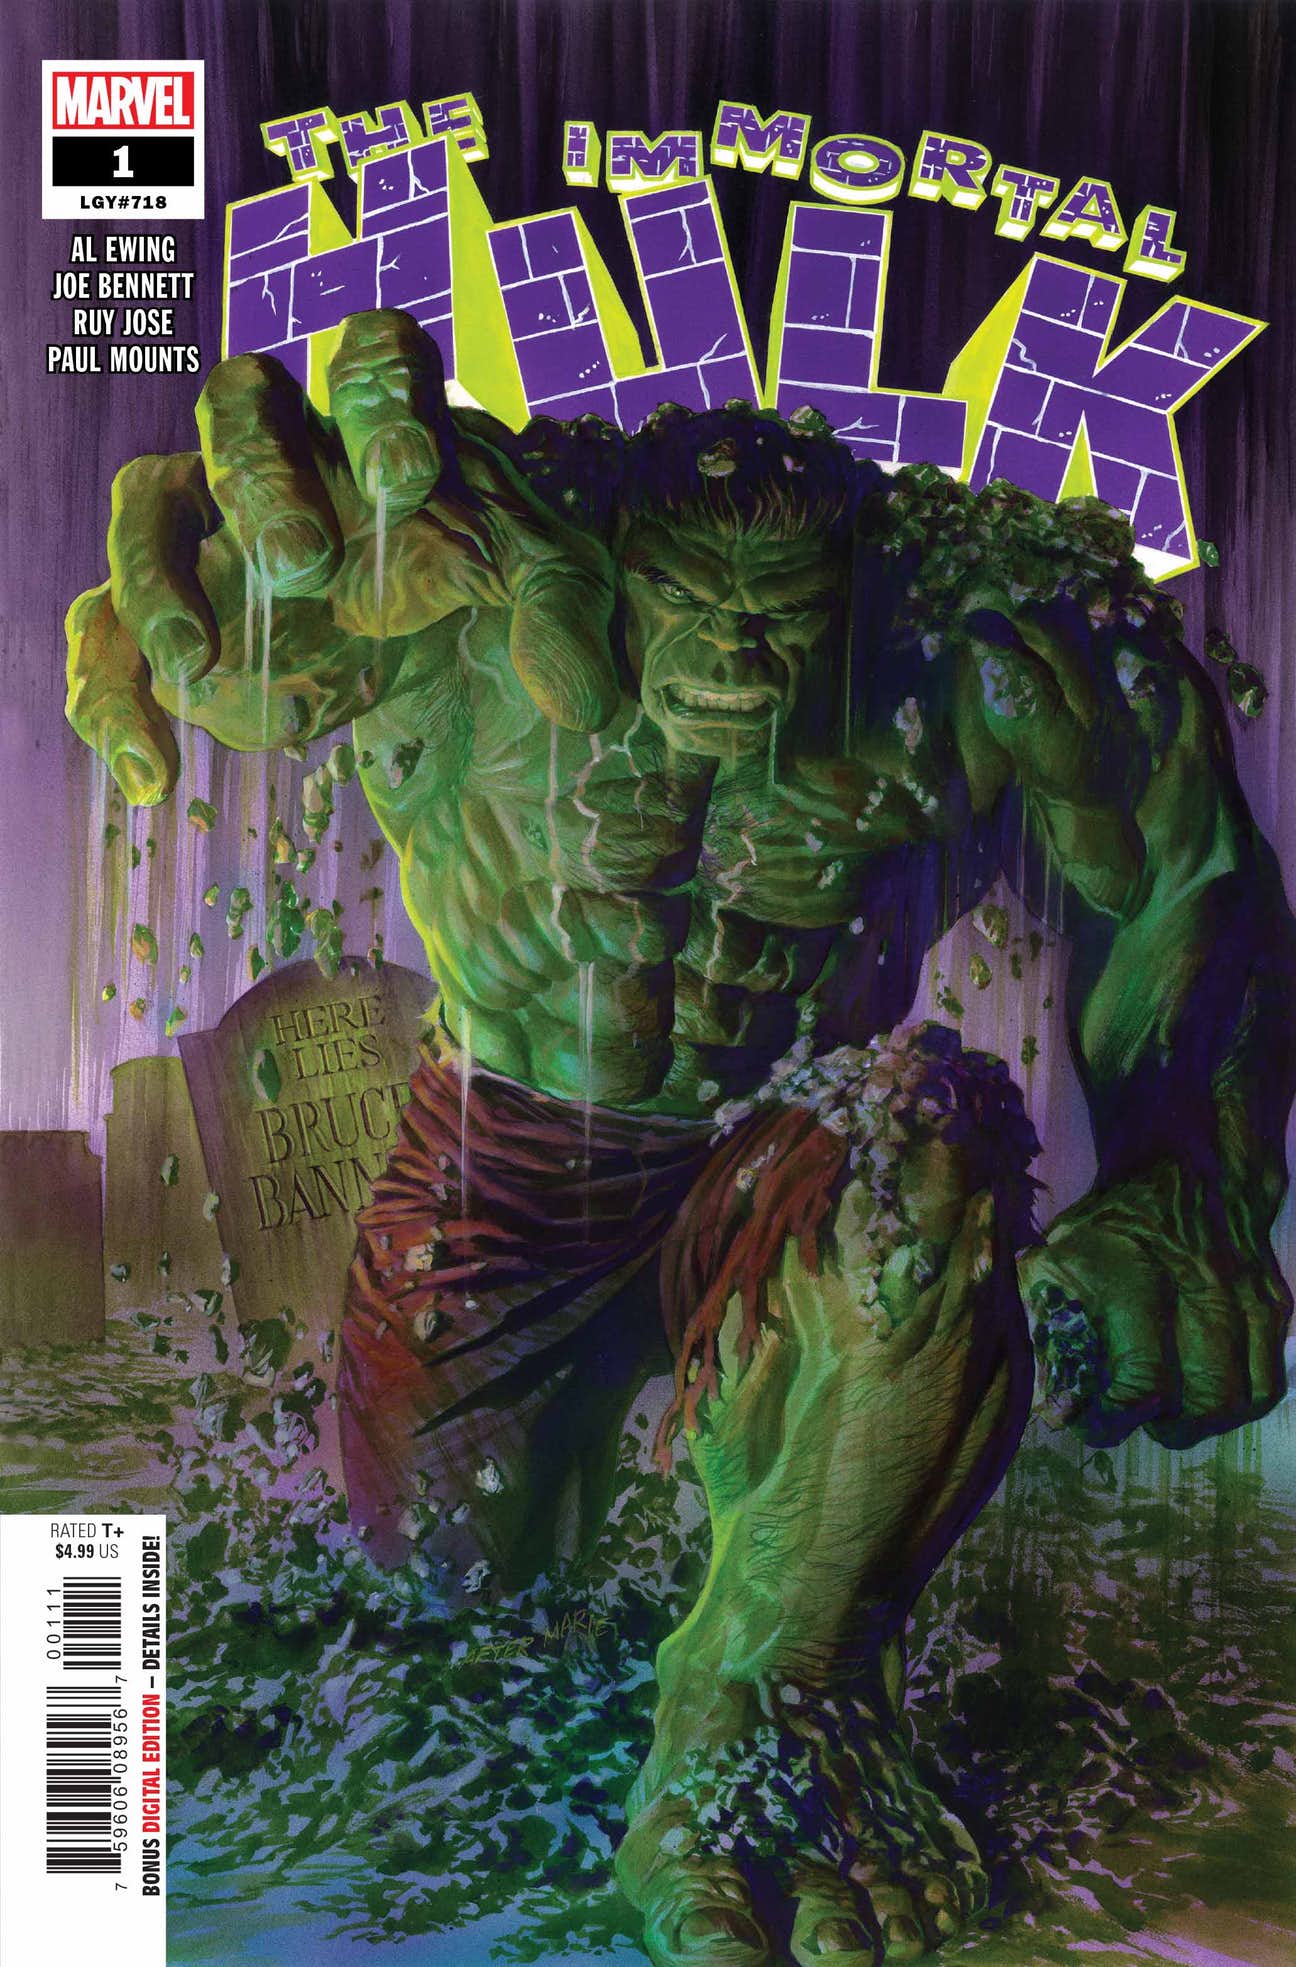 Staff Picks 'The Immortal Hulk' macabre mayhem in the